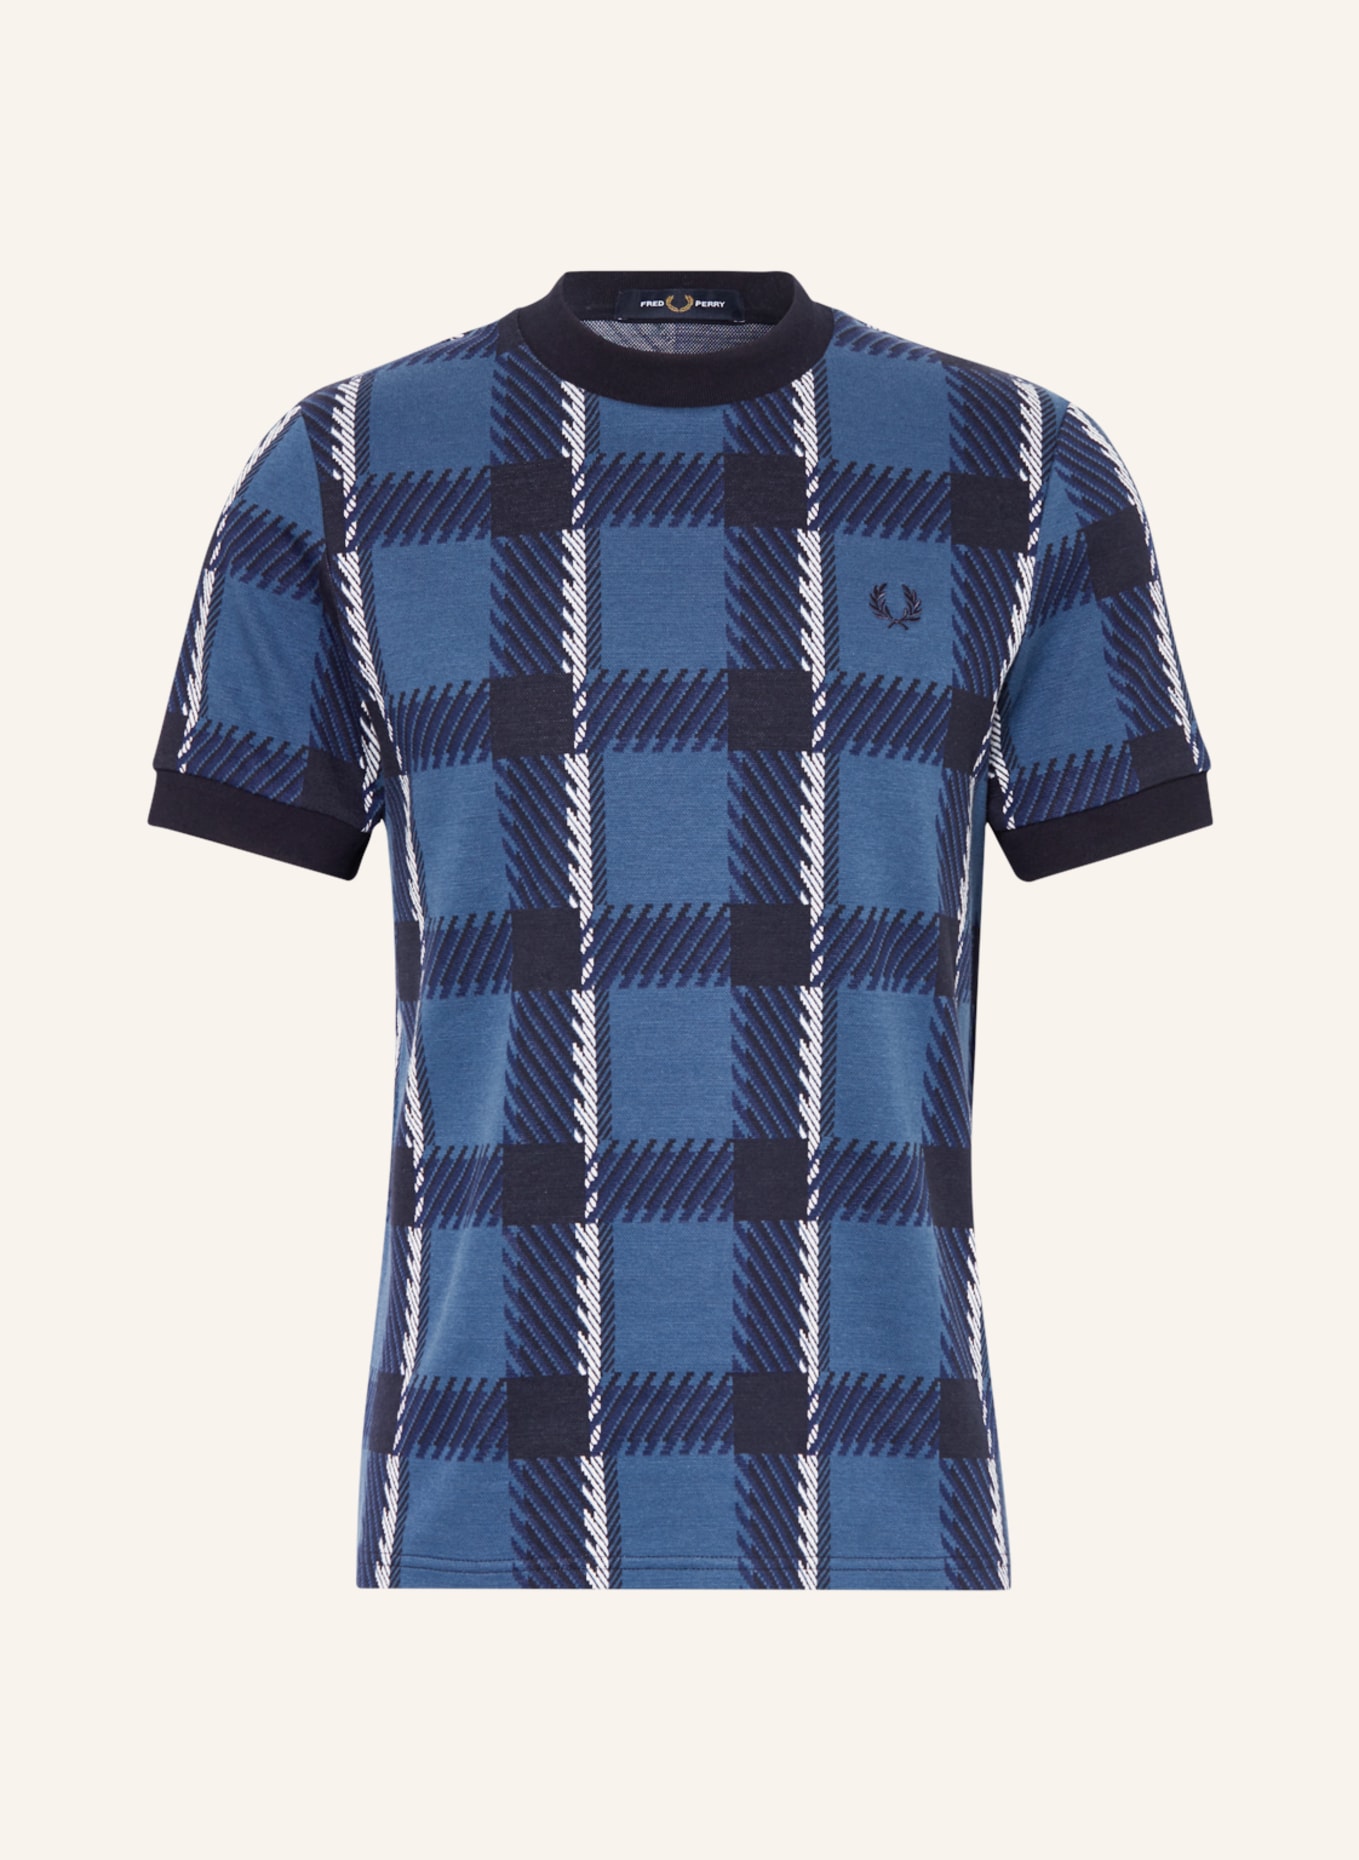 FRED PERRY T-Shirt GLITCH, Farbe: BLAU/ DUNKELBLAU/ WEISS (Bild 1)